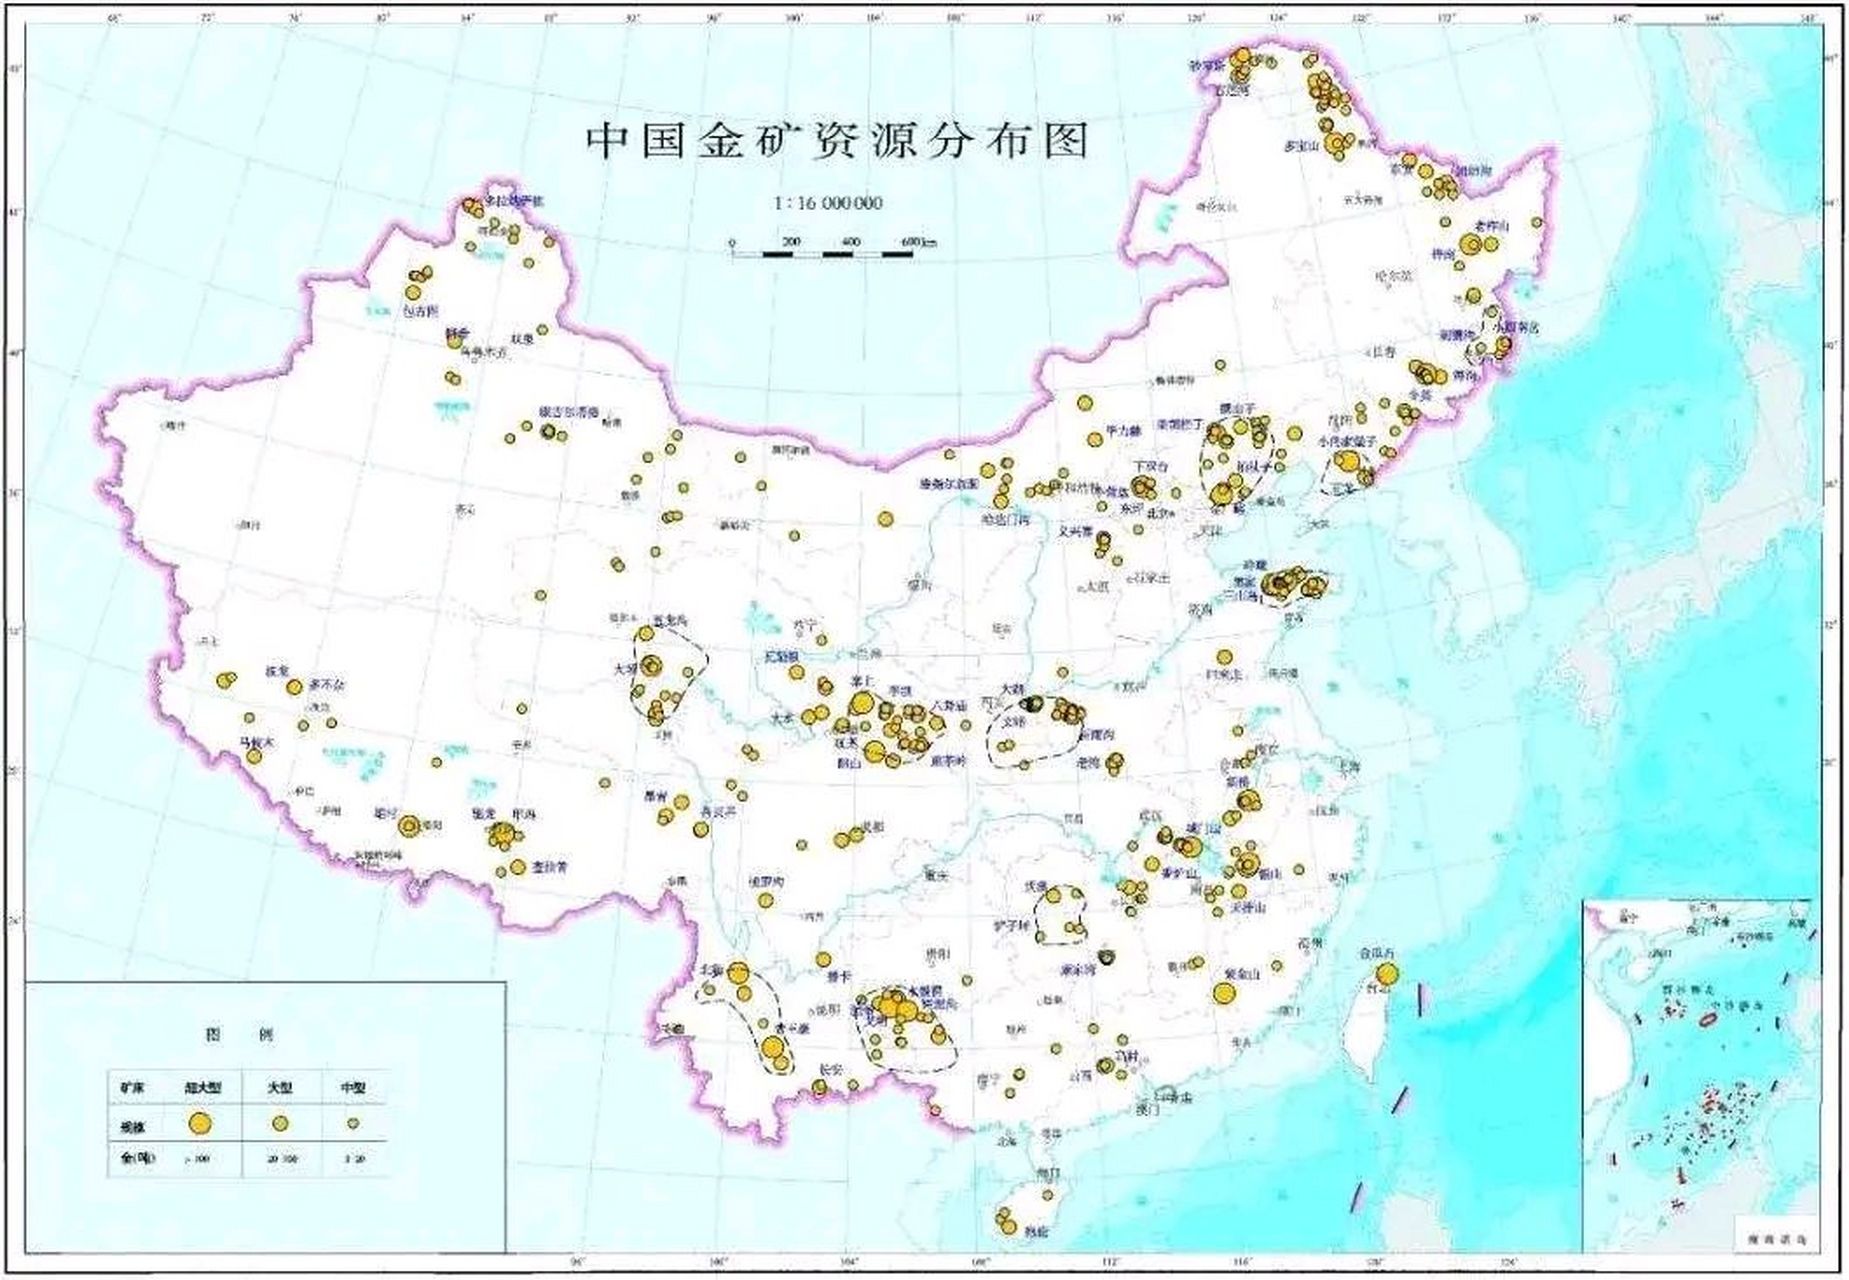 中国金矿资源分布图: 东南沿海五省不是太多,东北地区和西南居多,西藏